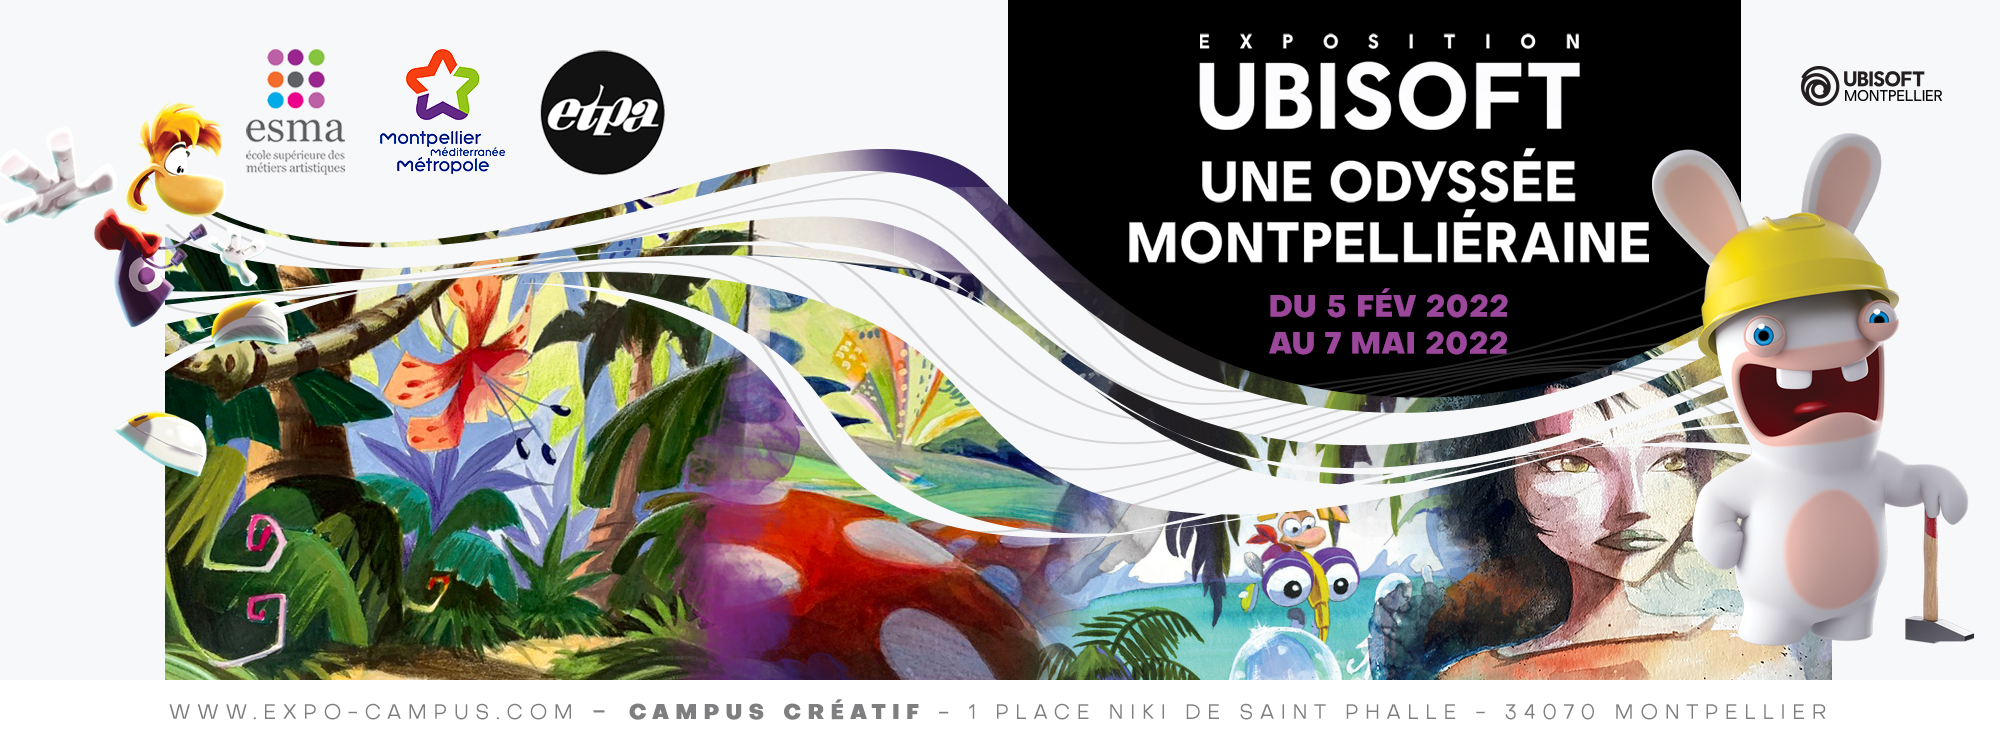 Exposition « Ubisoft, une odyssée montpelliéraine » au Campus Créatif du 5 février au 7 mai 2022 | Montpellier Méditerranée Métropole